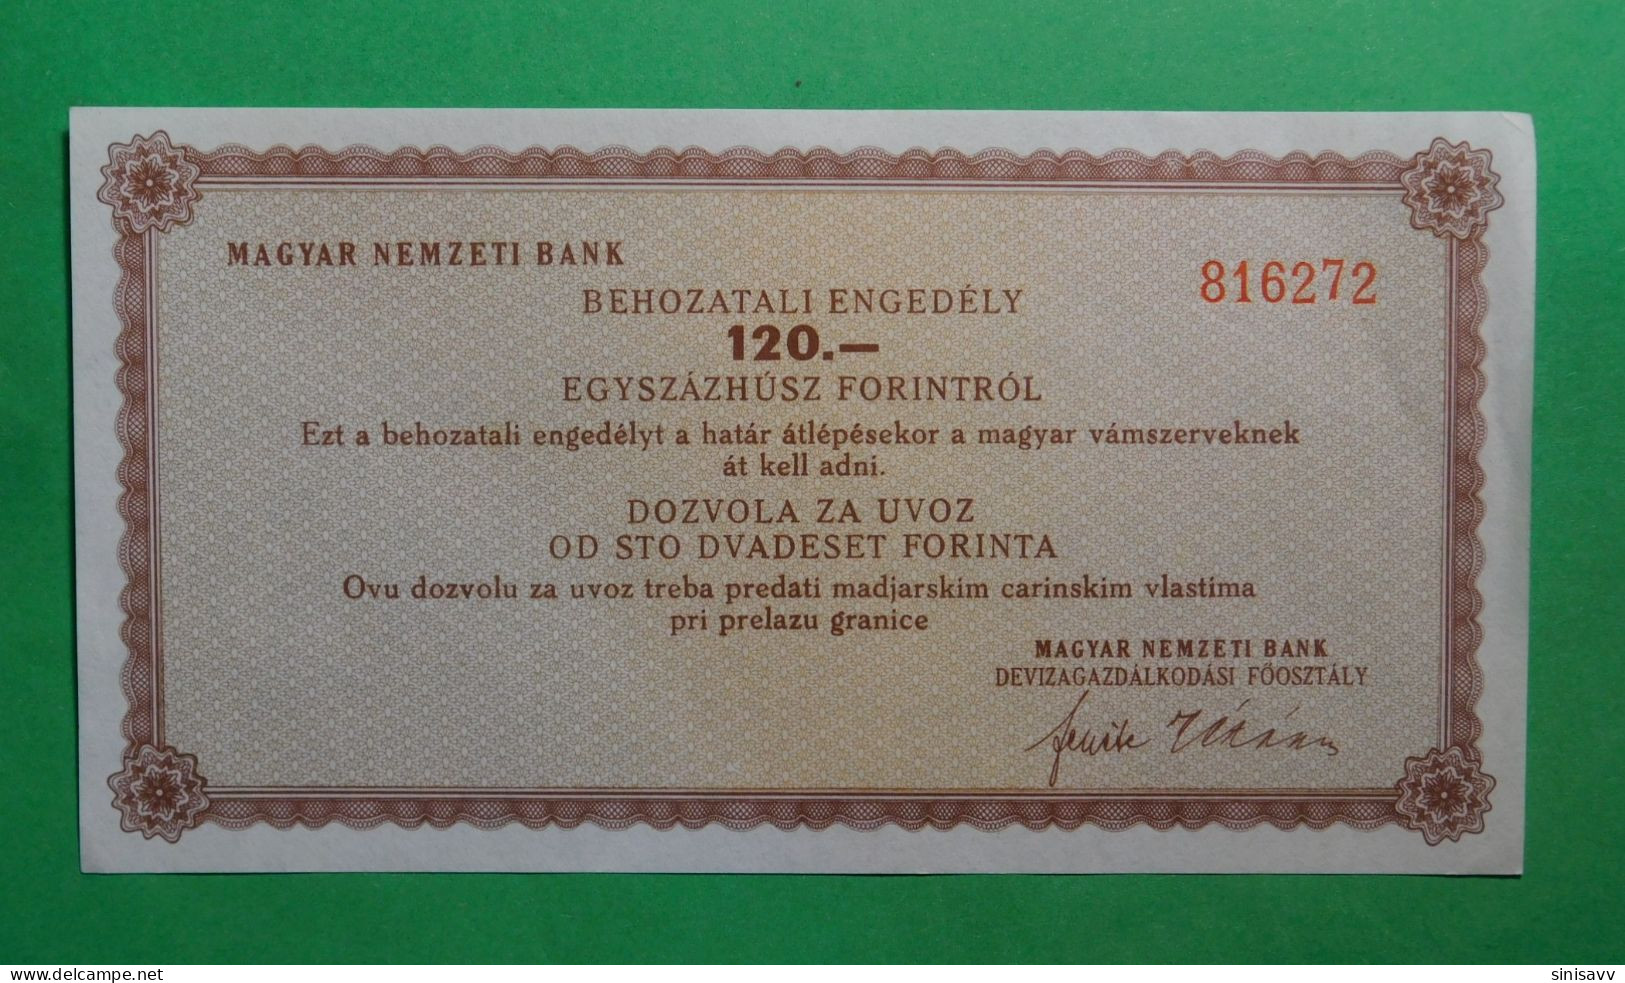 Magyar Nemzeti Bank - Behozatali Engedely 120 Forintrol - Dozvola Za Uvoz Od 120 Forinta - Hongrie